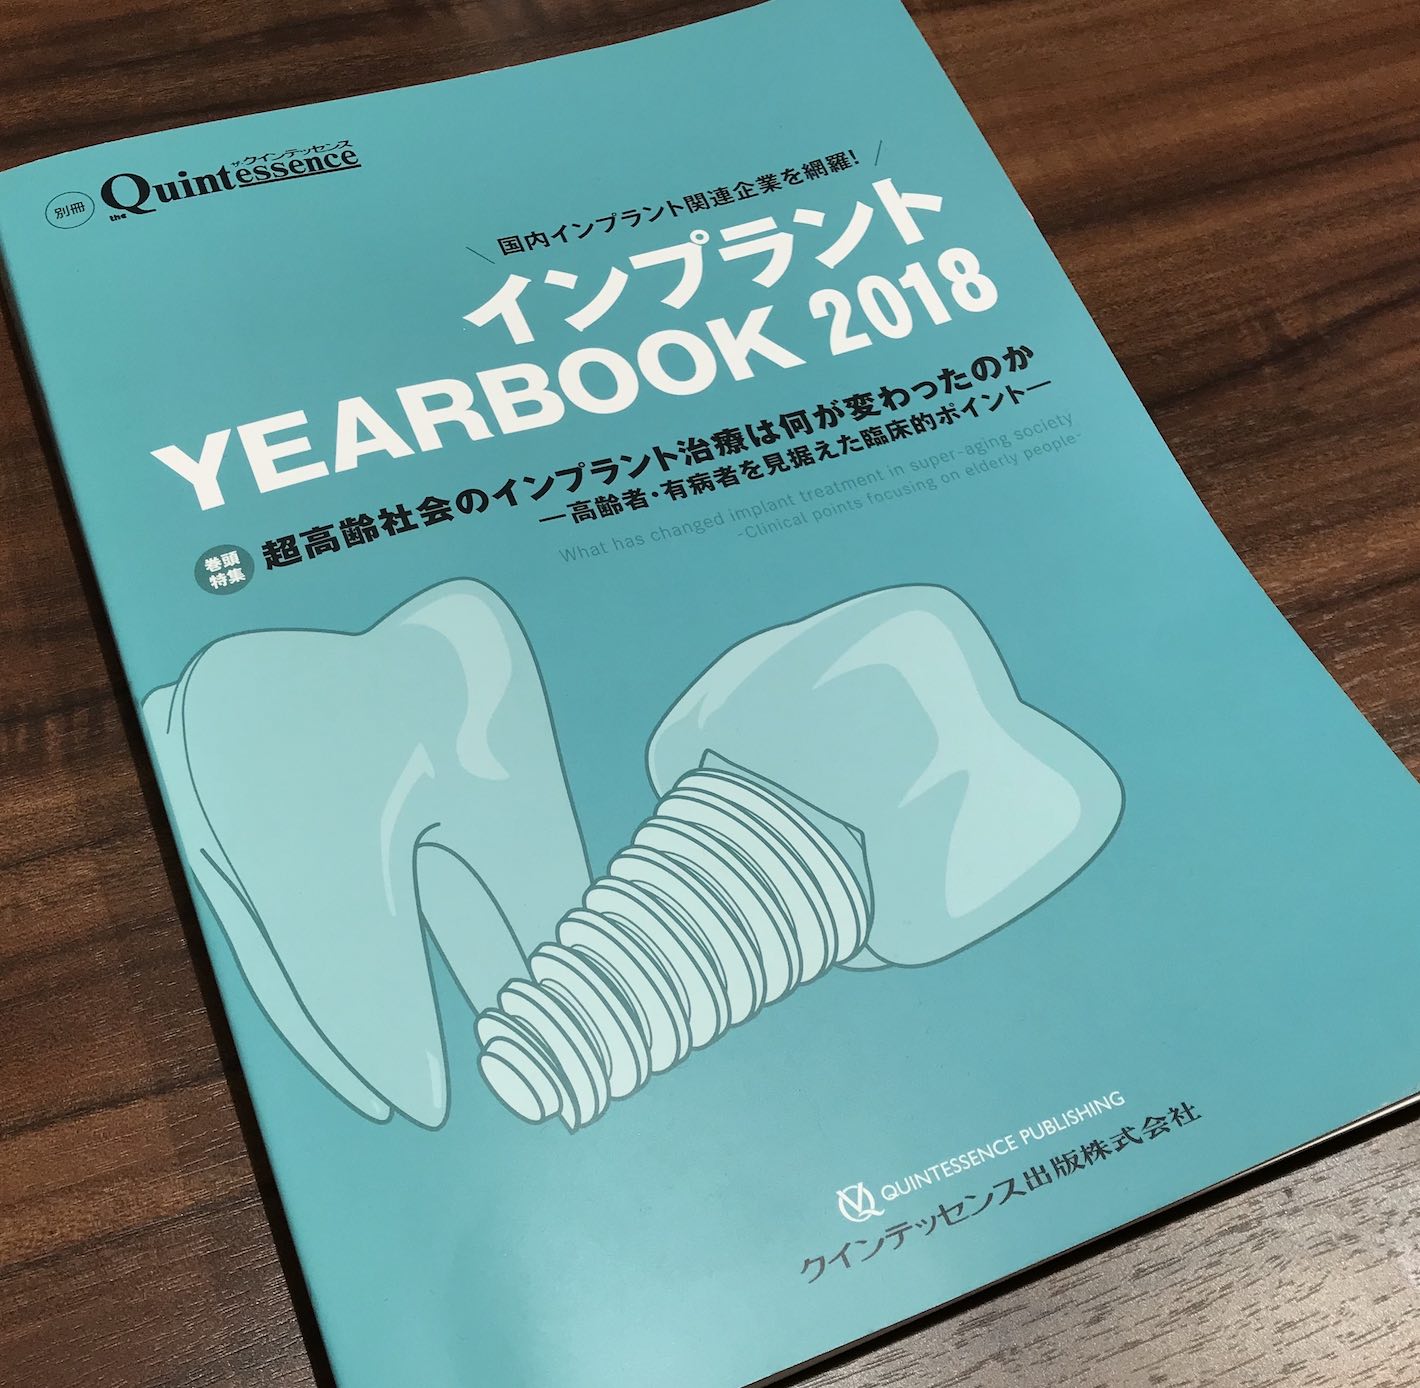 【歯科医師向け情報】【症例掲載】インプラントYEARBOOK 2018年にて症例を紹介しています